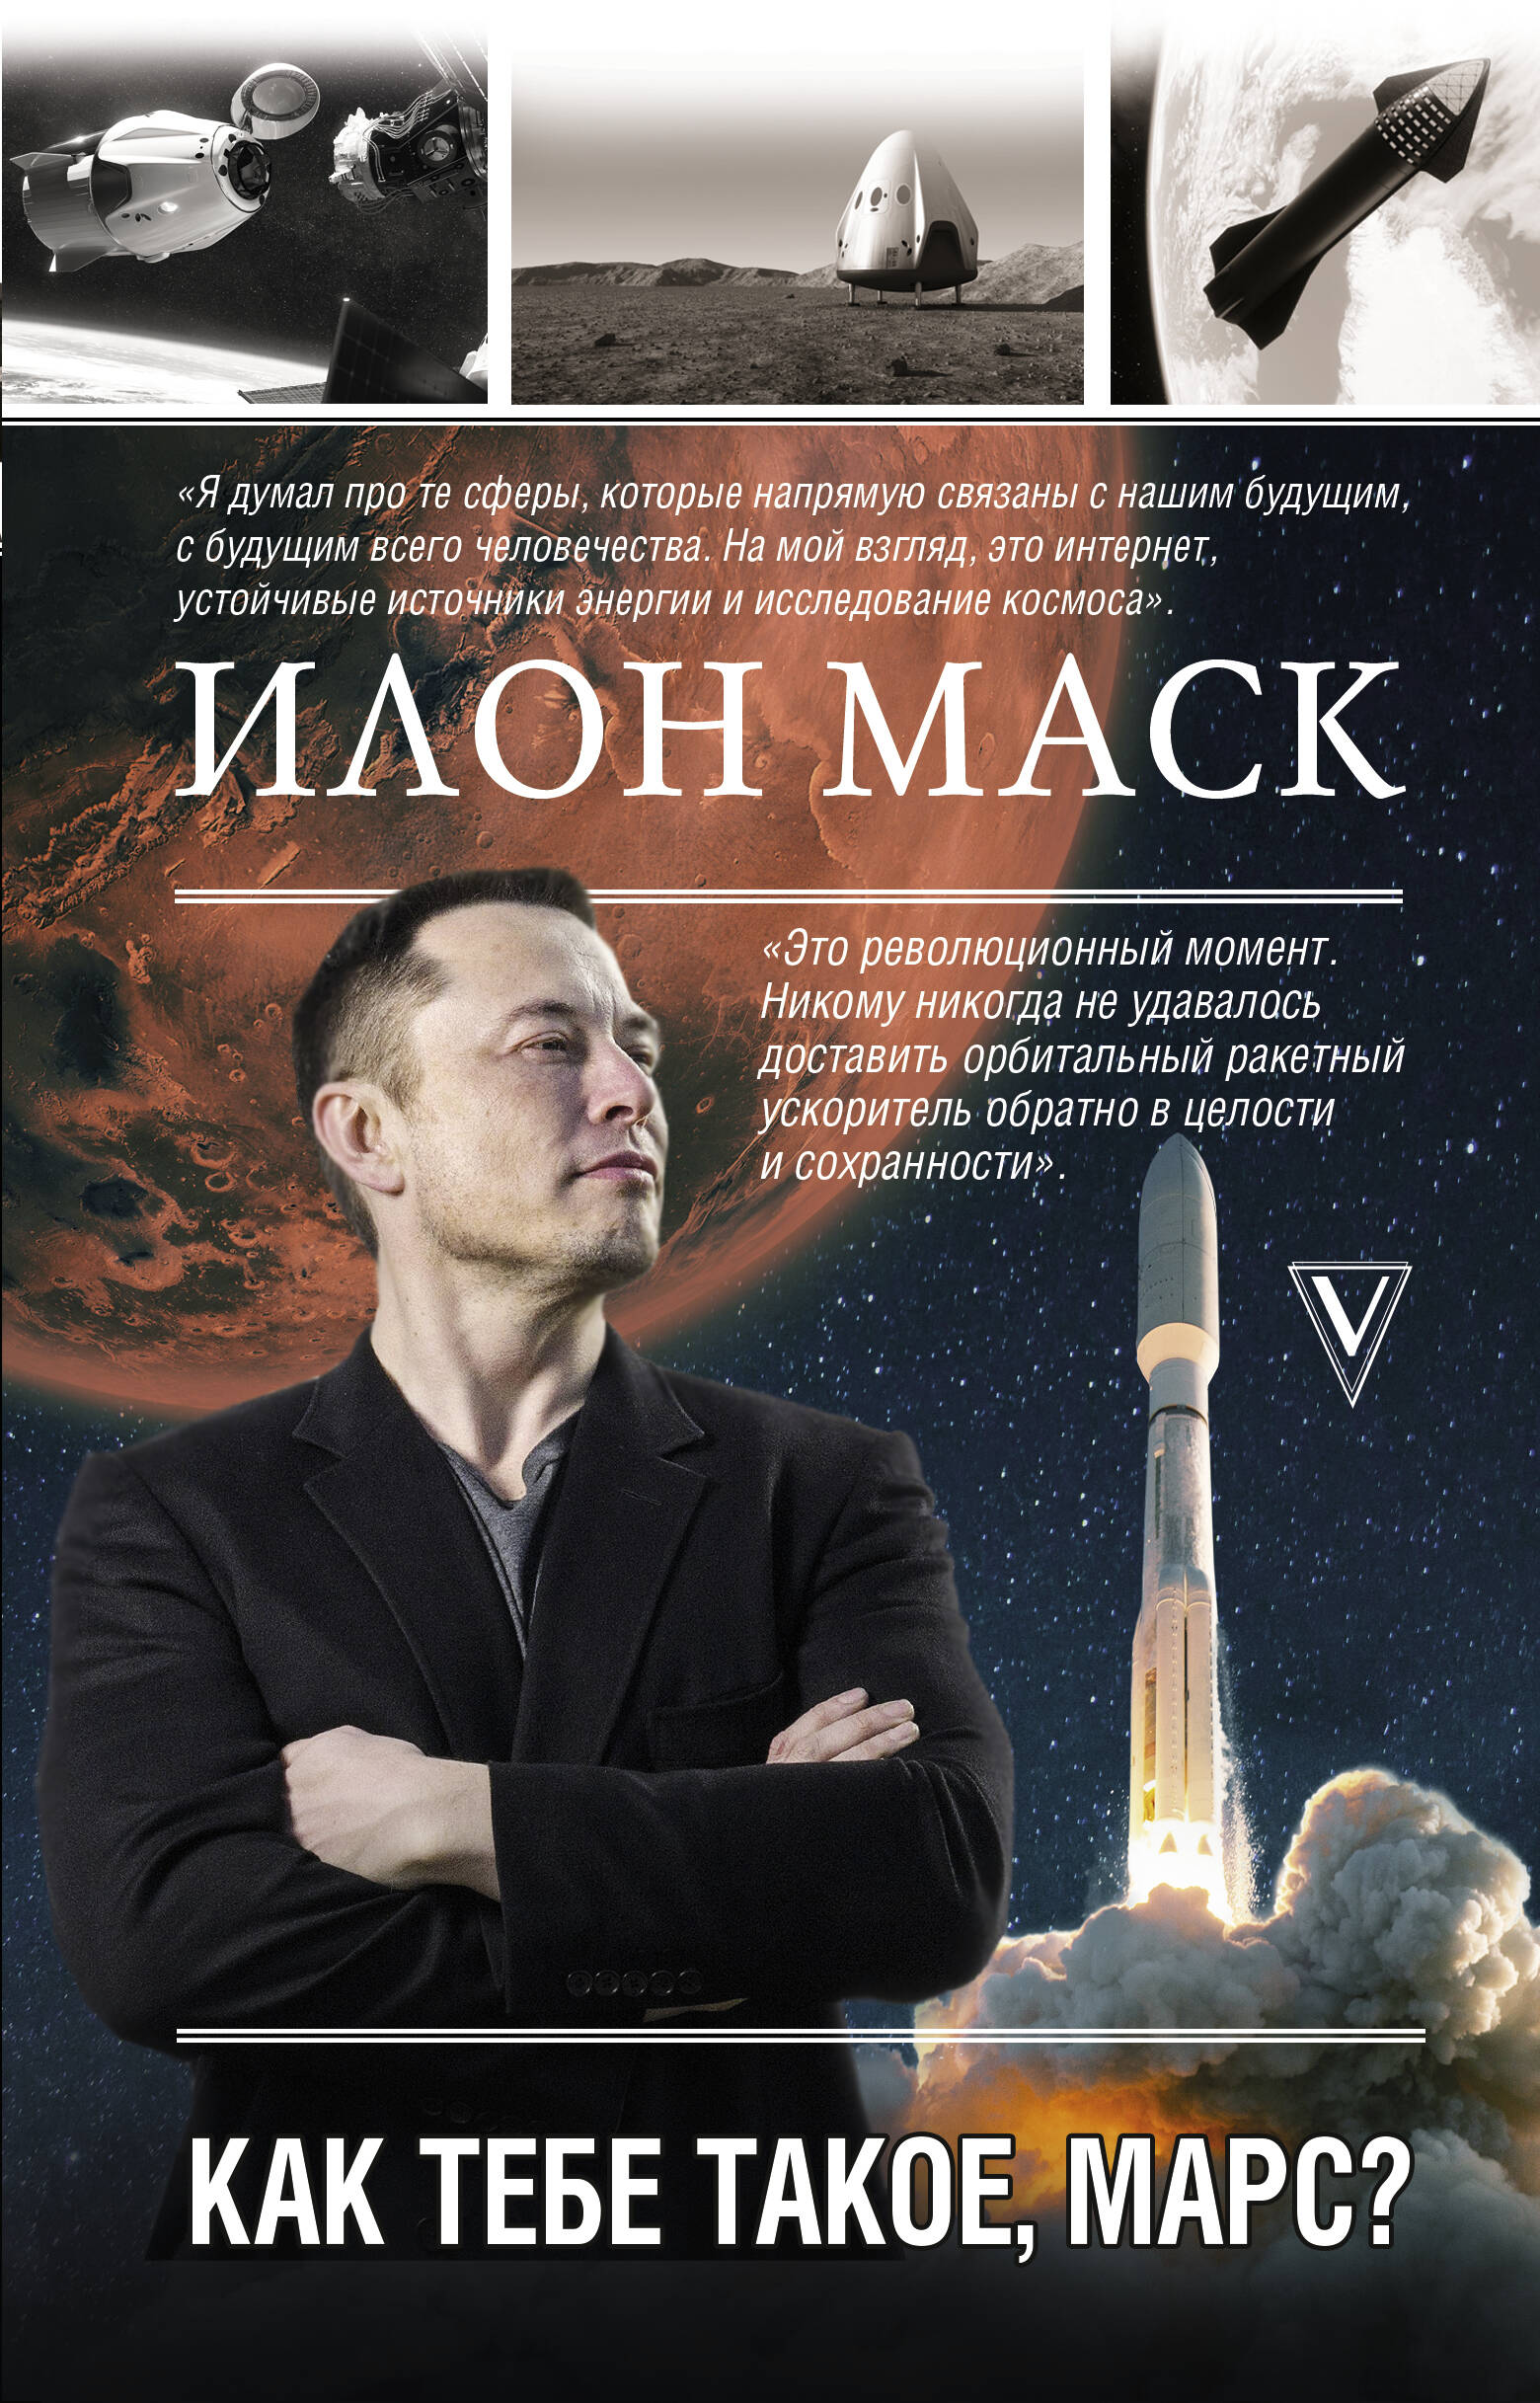 Реддинг А. Илон Маск. Как тебе такое, Марс?